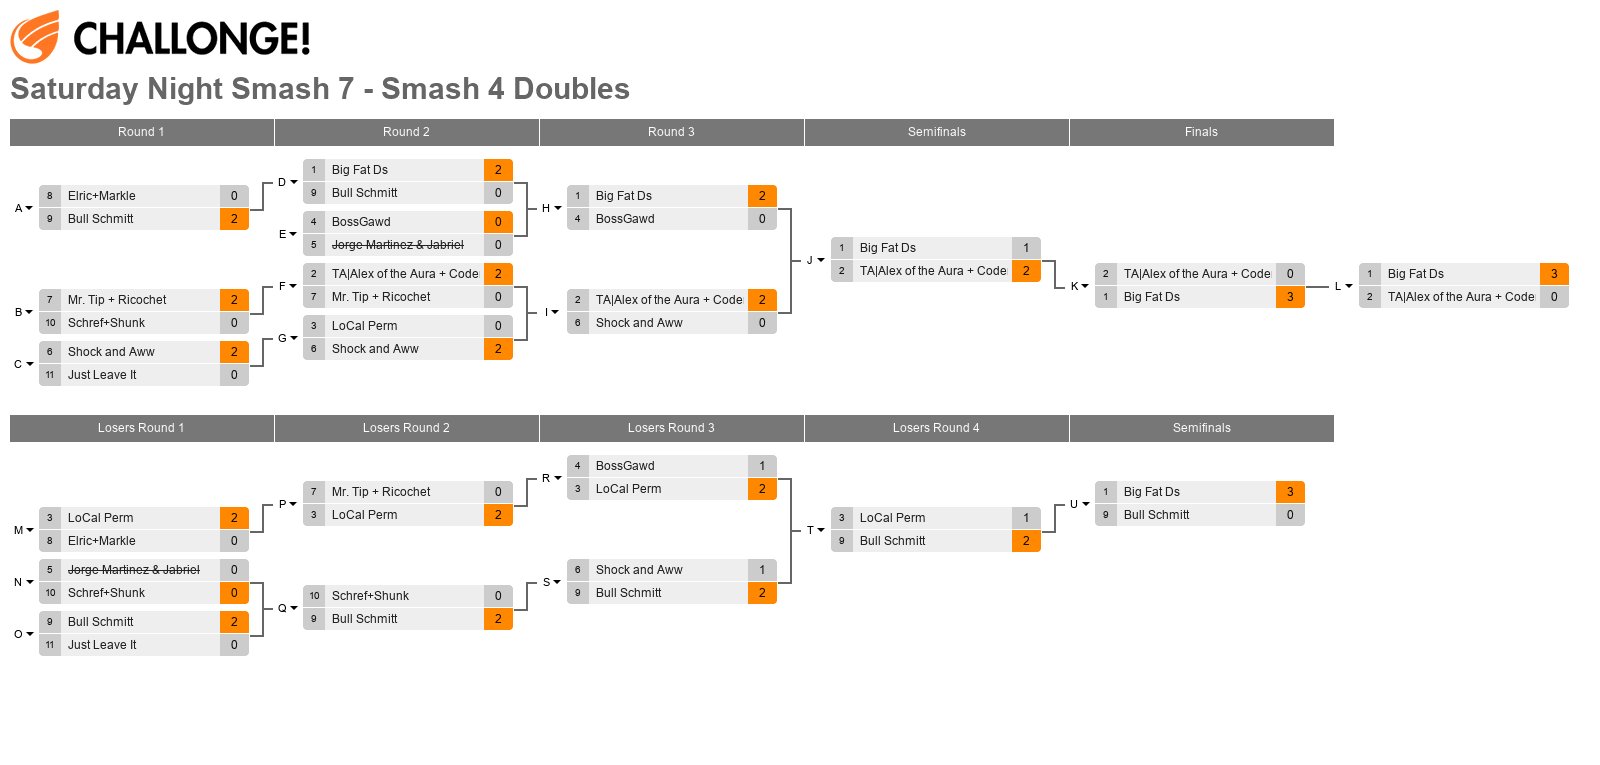 Saturday Night Smash 7 - Smash 4 Doubles